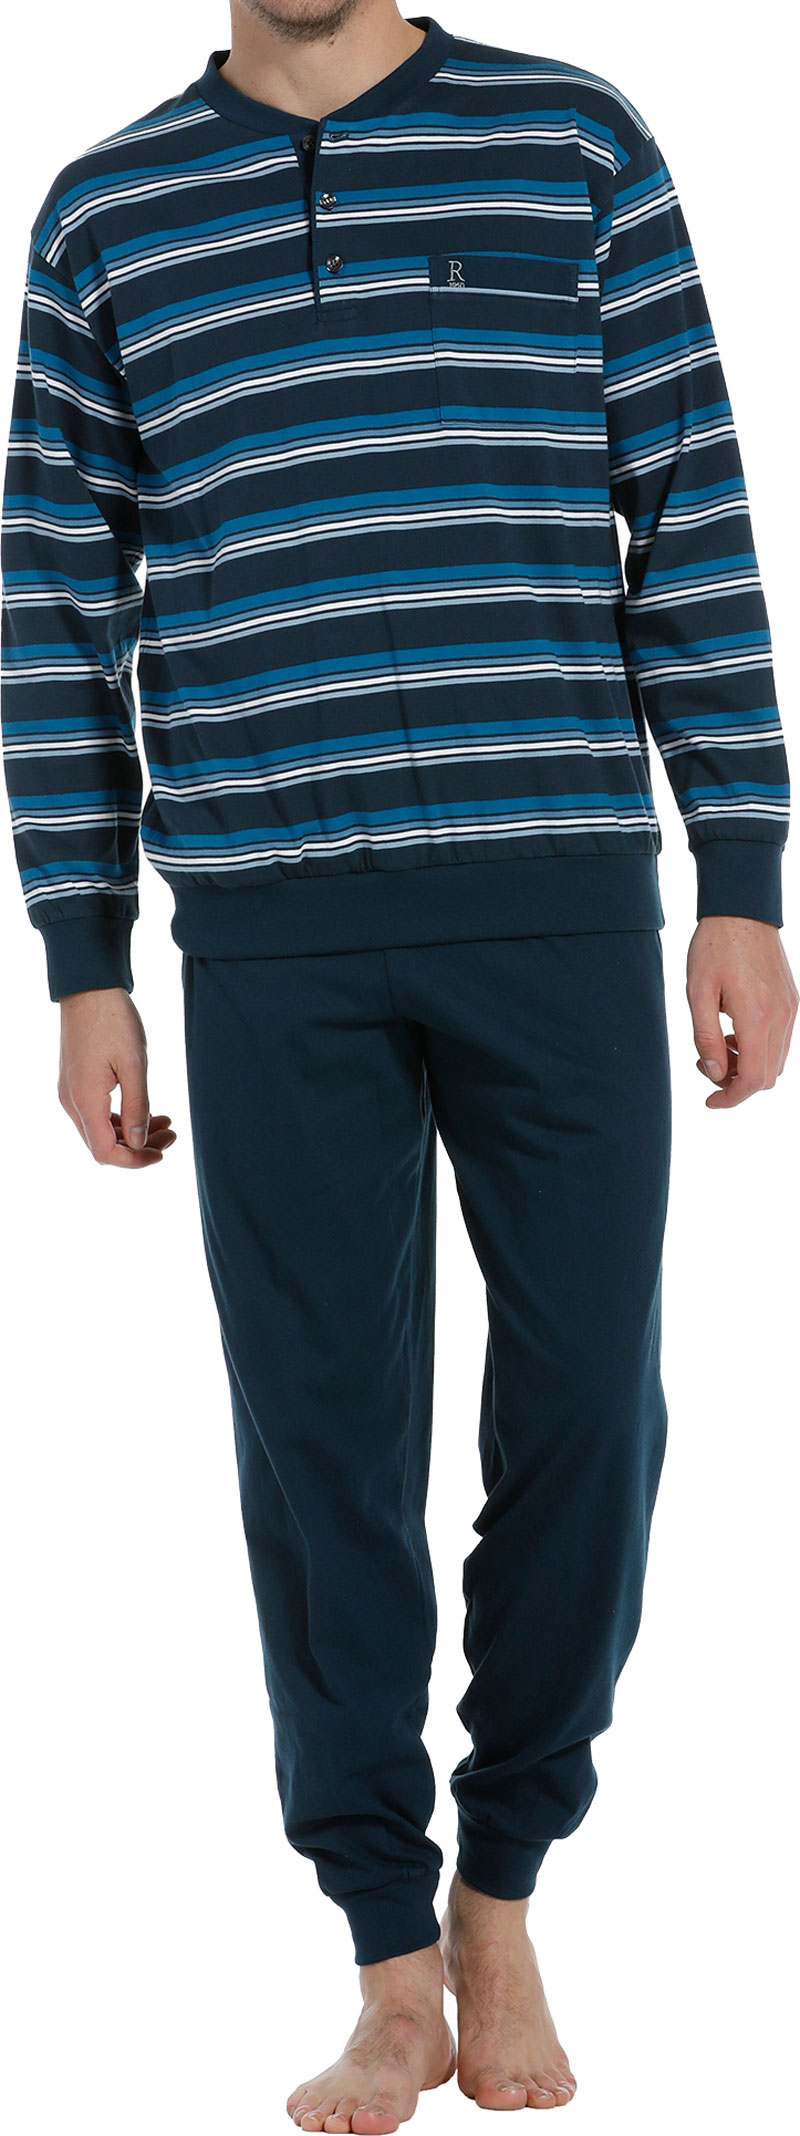 Robson heren pyjama met knoopjes blauw